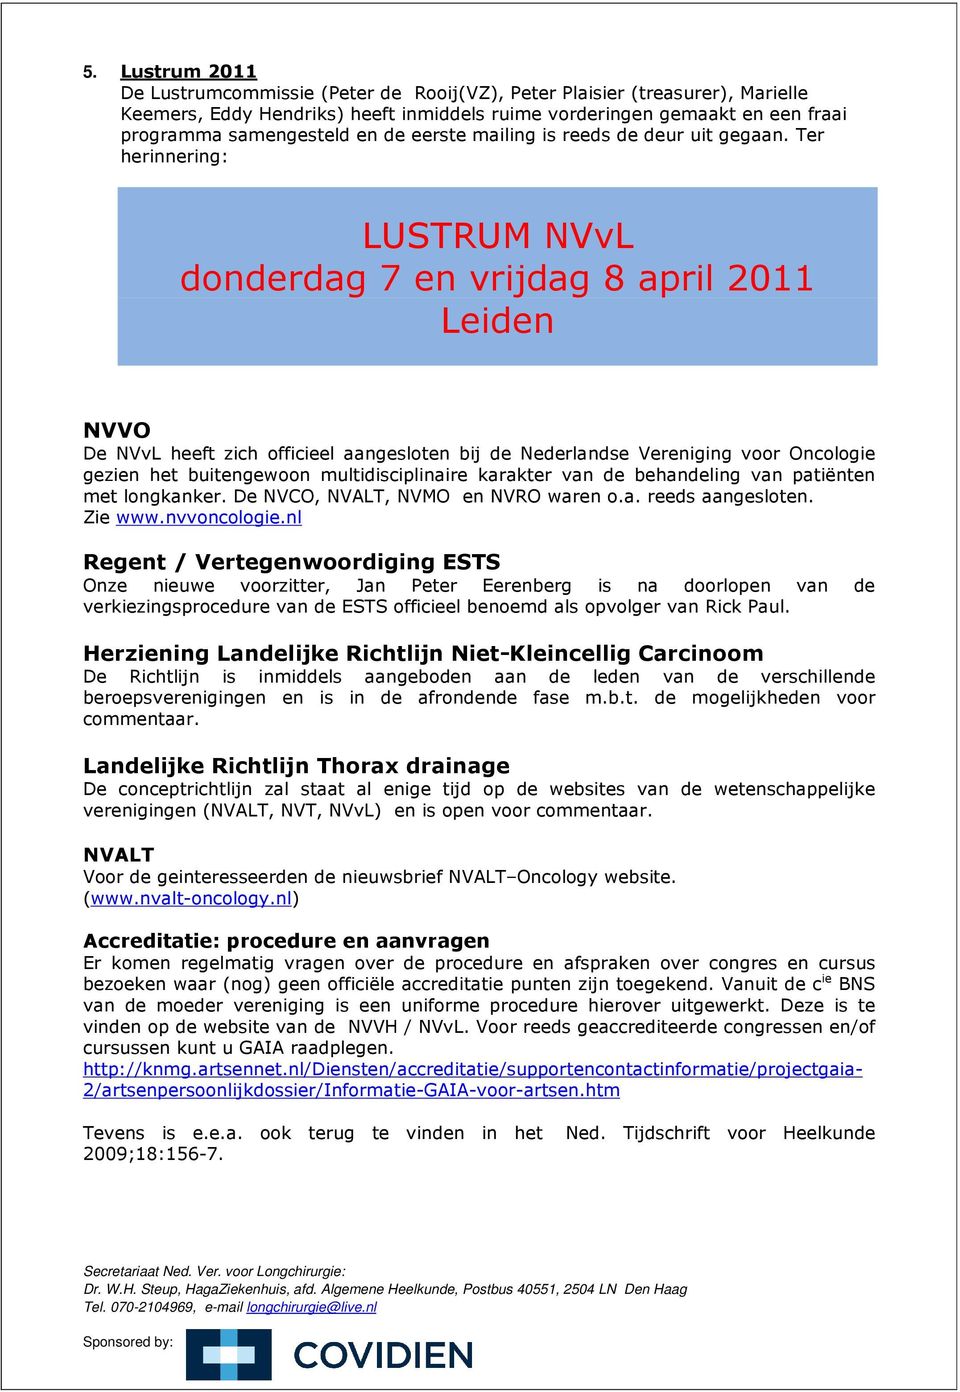 Ter herinnering: LUSTRUM NVvL donderdag 7 en vrijdag 8 april 2011 Leiden NVVO De NVvL heeft zich officieel aangesloten bij de Nederlandse Vereniging voor Oncologie gezien het buitengewoon